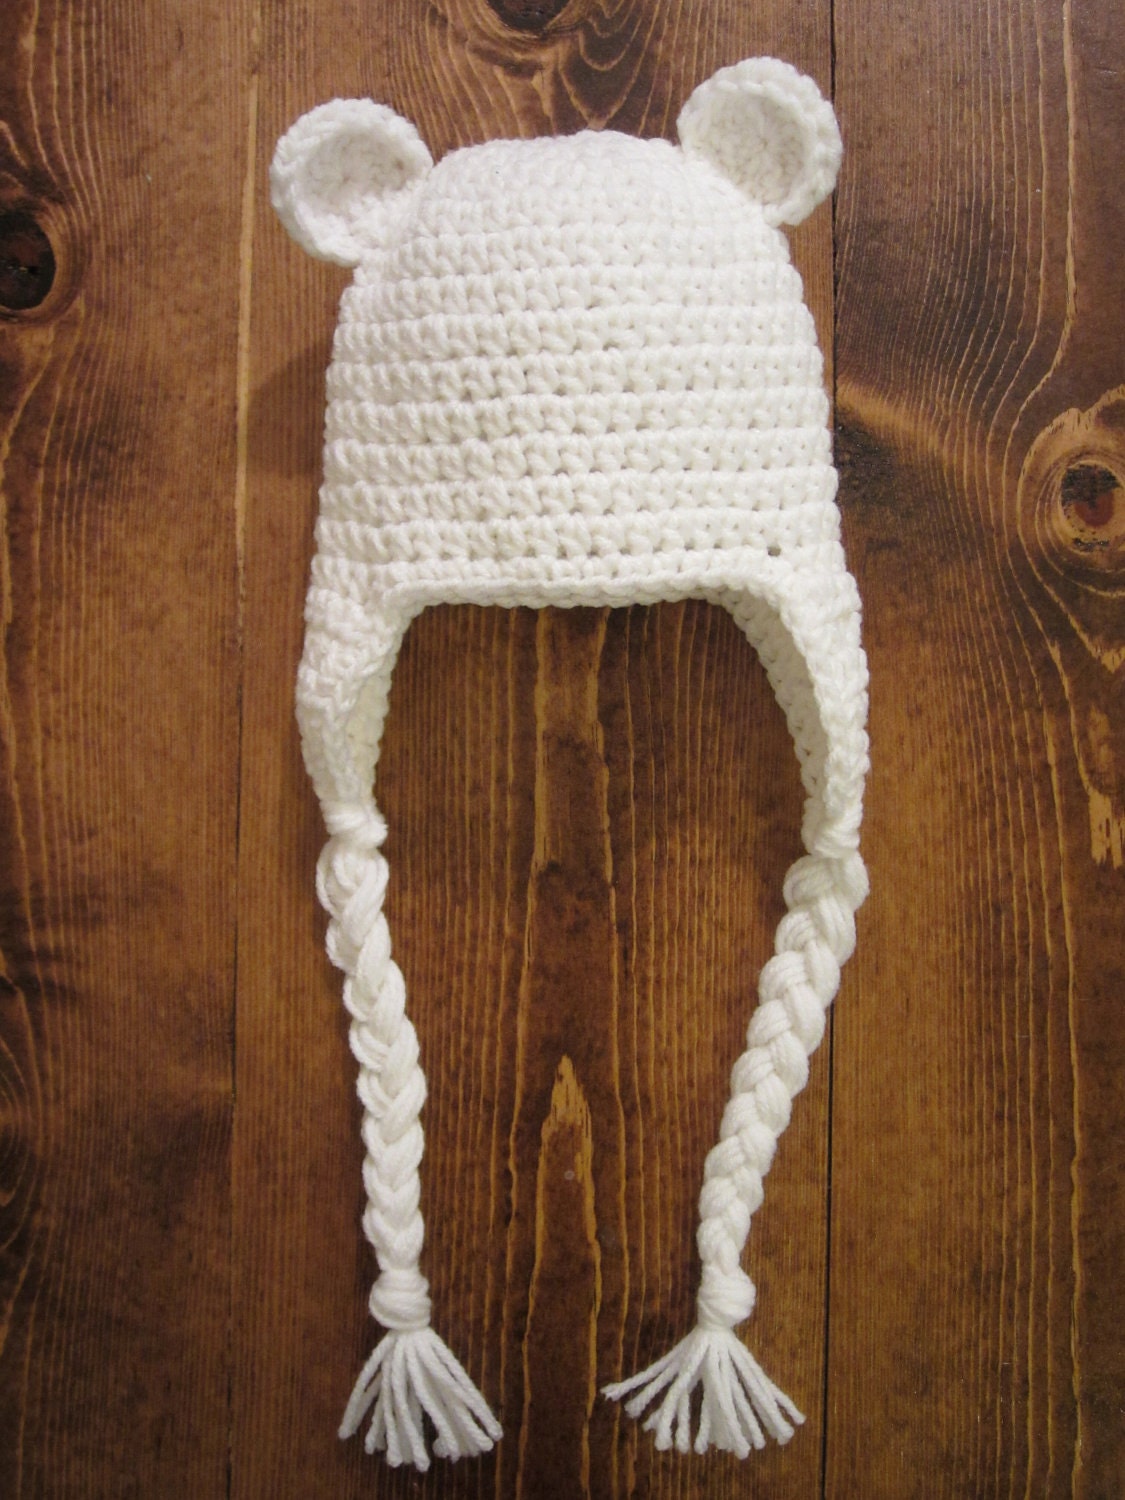 Beary Sweet crochet earflap hat